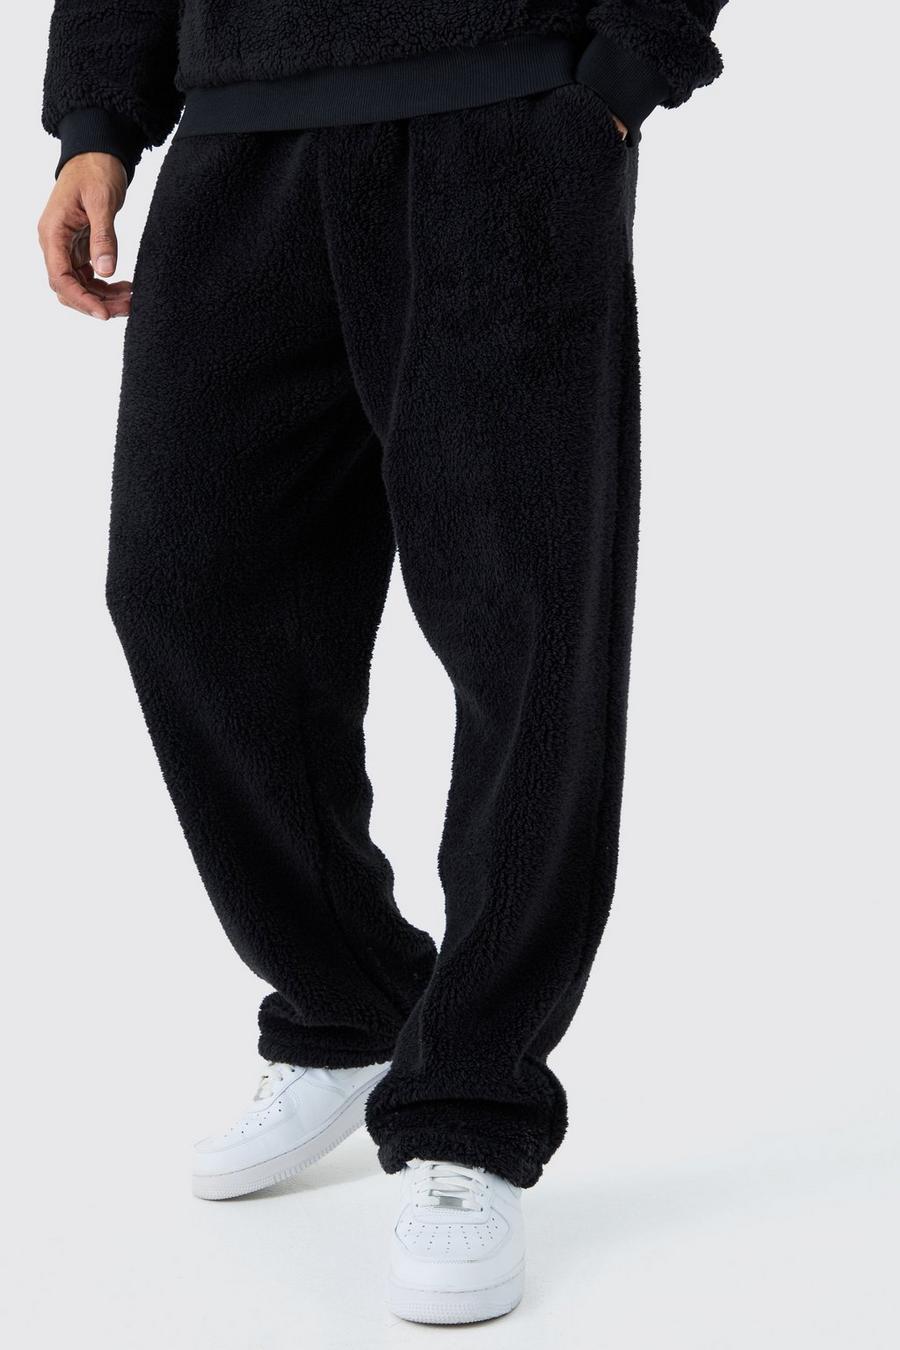 Pantalón deportivo oversize liso de borreguito, Black